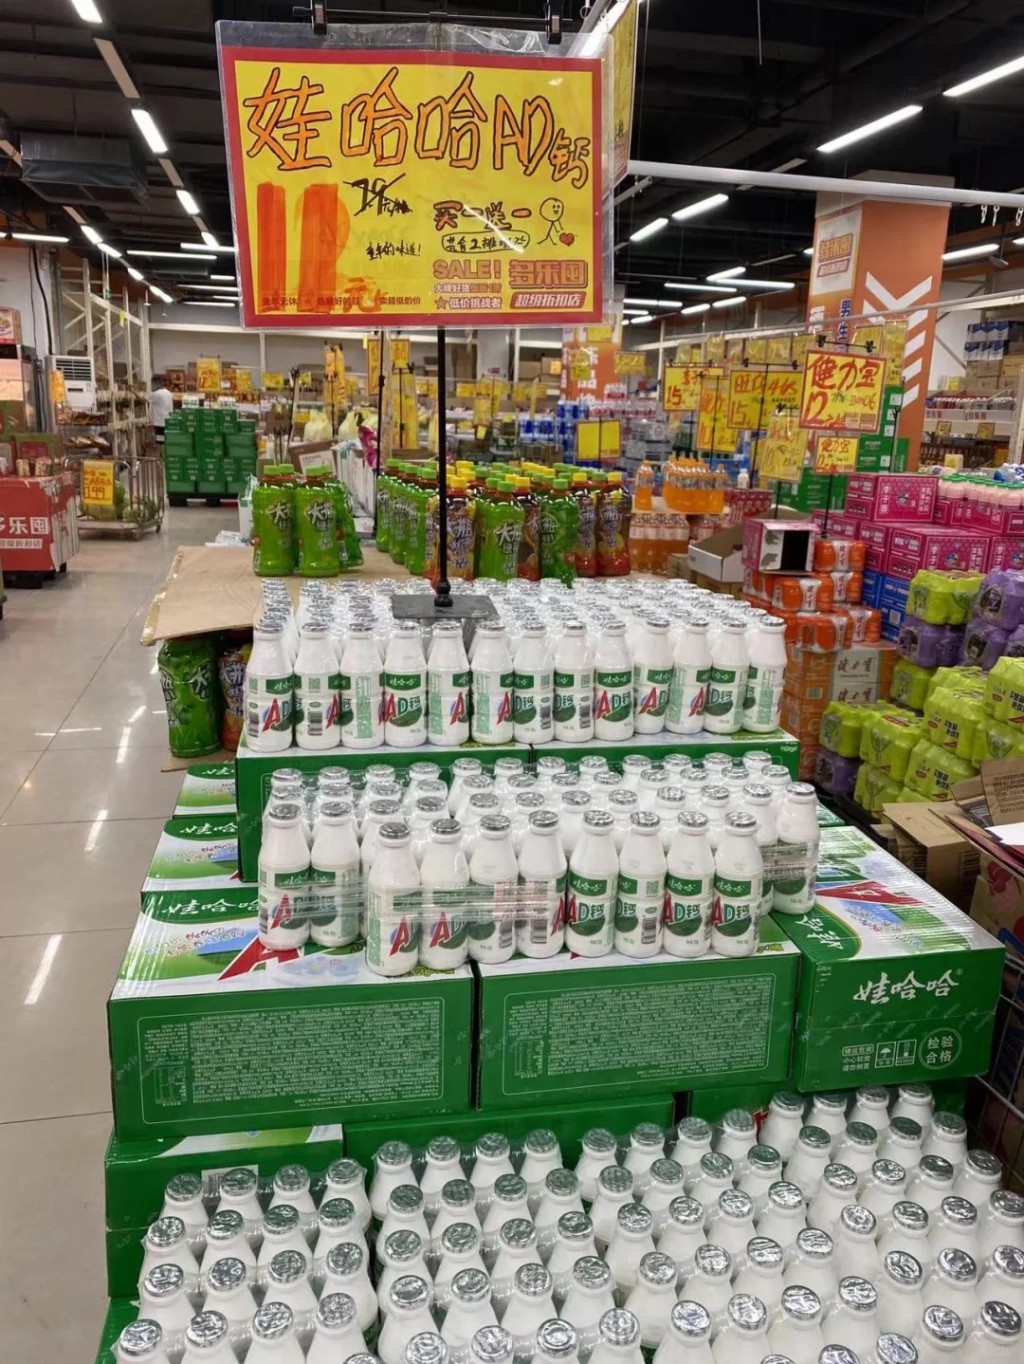 娃哈哈集團是中國最大的食品飲料生產企業。小紅書